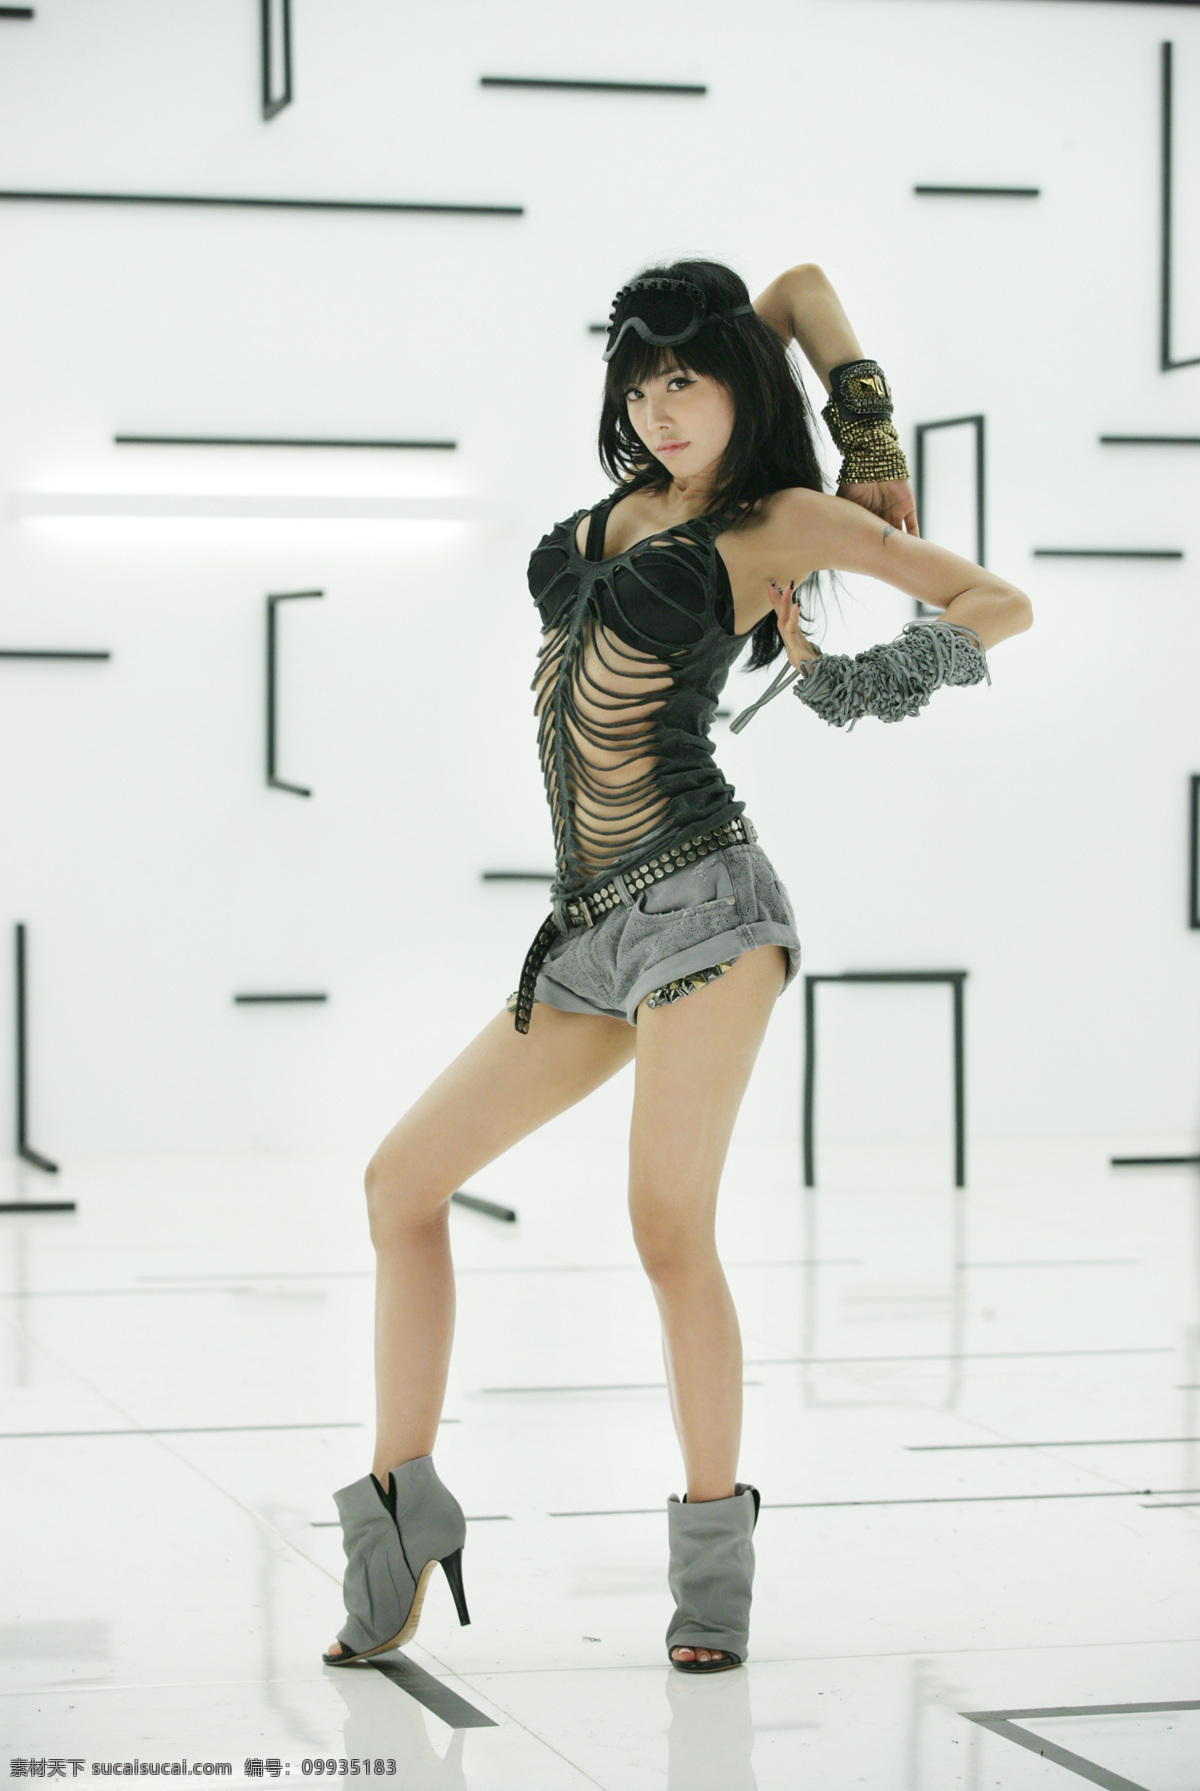 蔡依林 jolin 明星 偶像 美女 性感 台湾 歌手 舞蹈 高清 明星偶像 人物图库